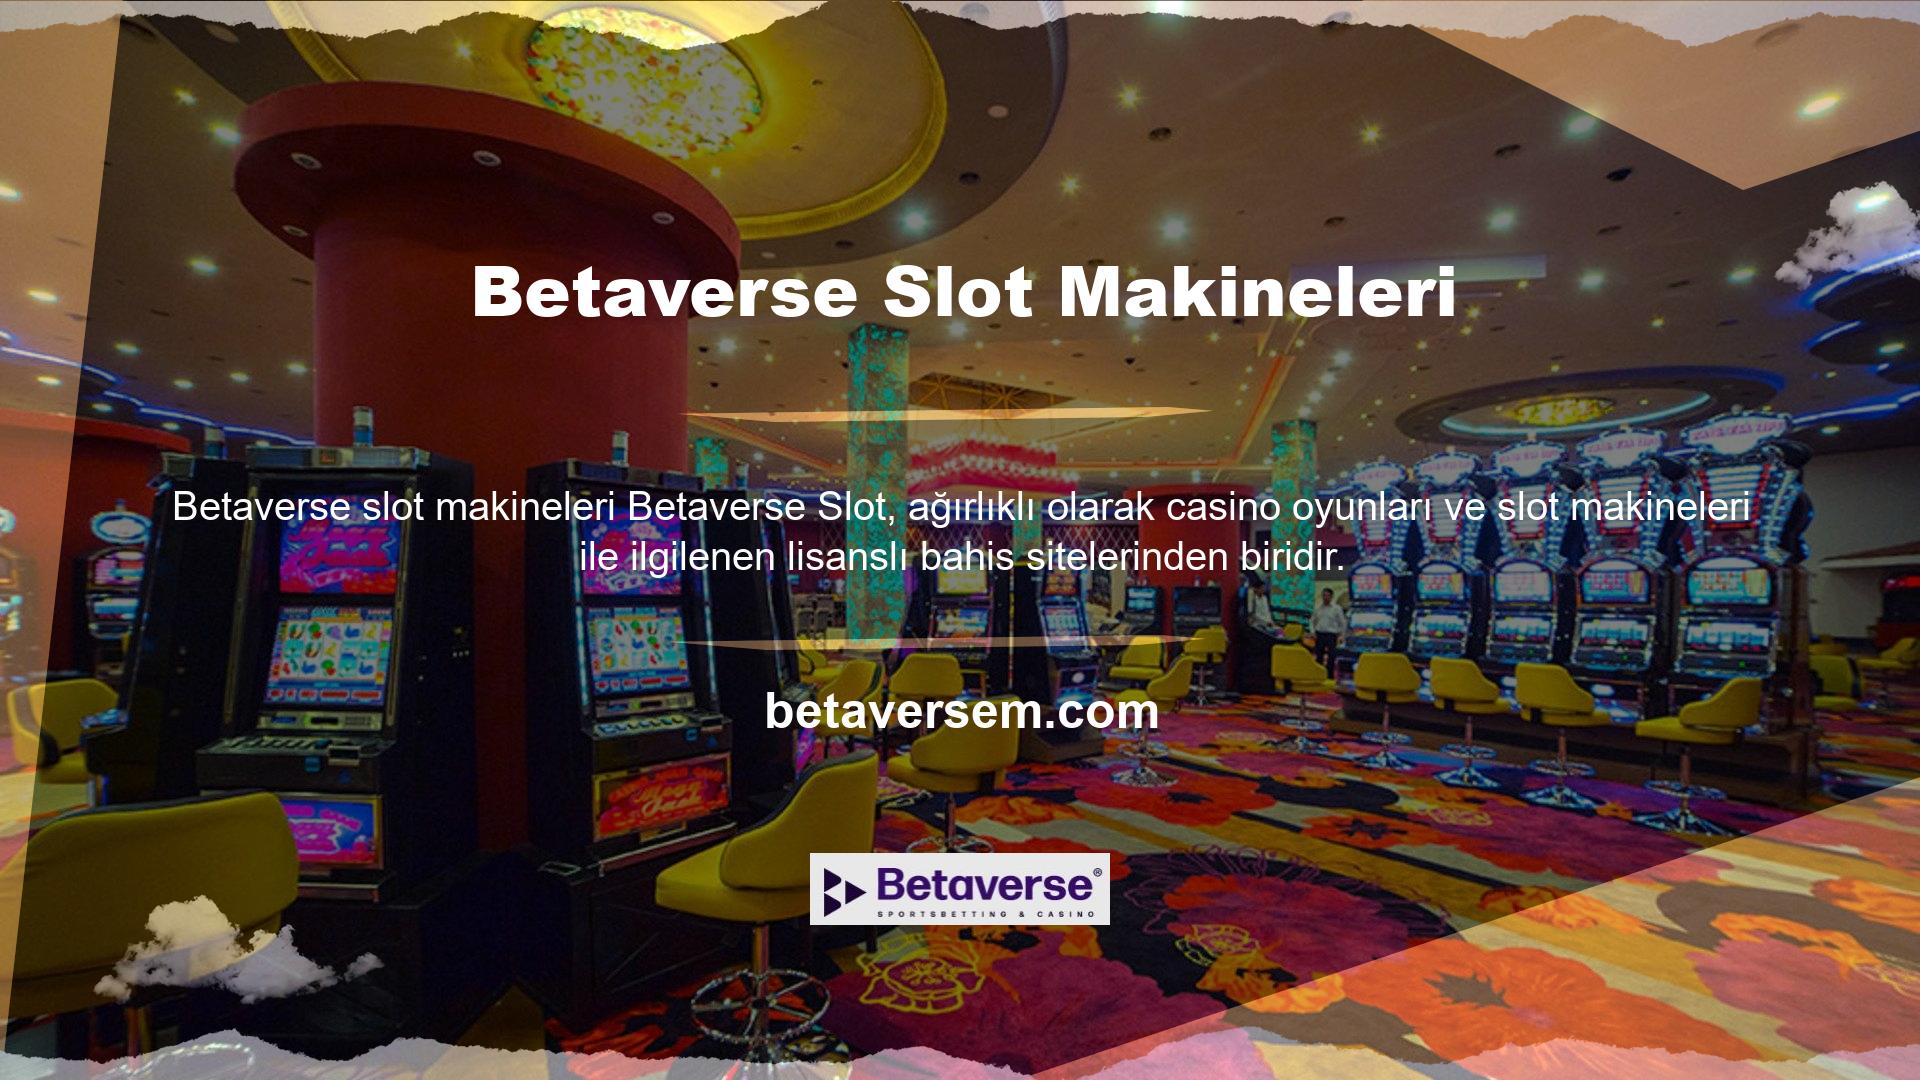 Bahis sitesi diğer klasik bahis sitelerinden farklı olarak casino oyunlarına odaklı hizmetler ve farklı yazılımlarla dolu slot makineleri sunmaktadır